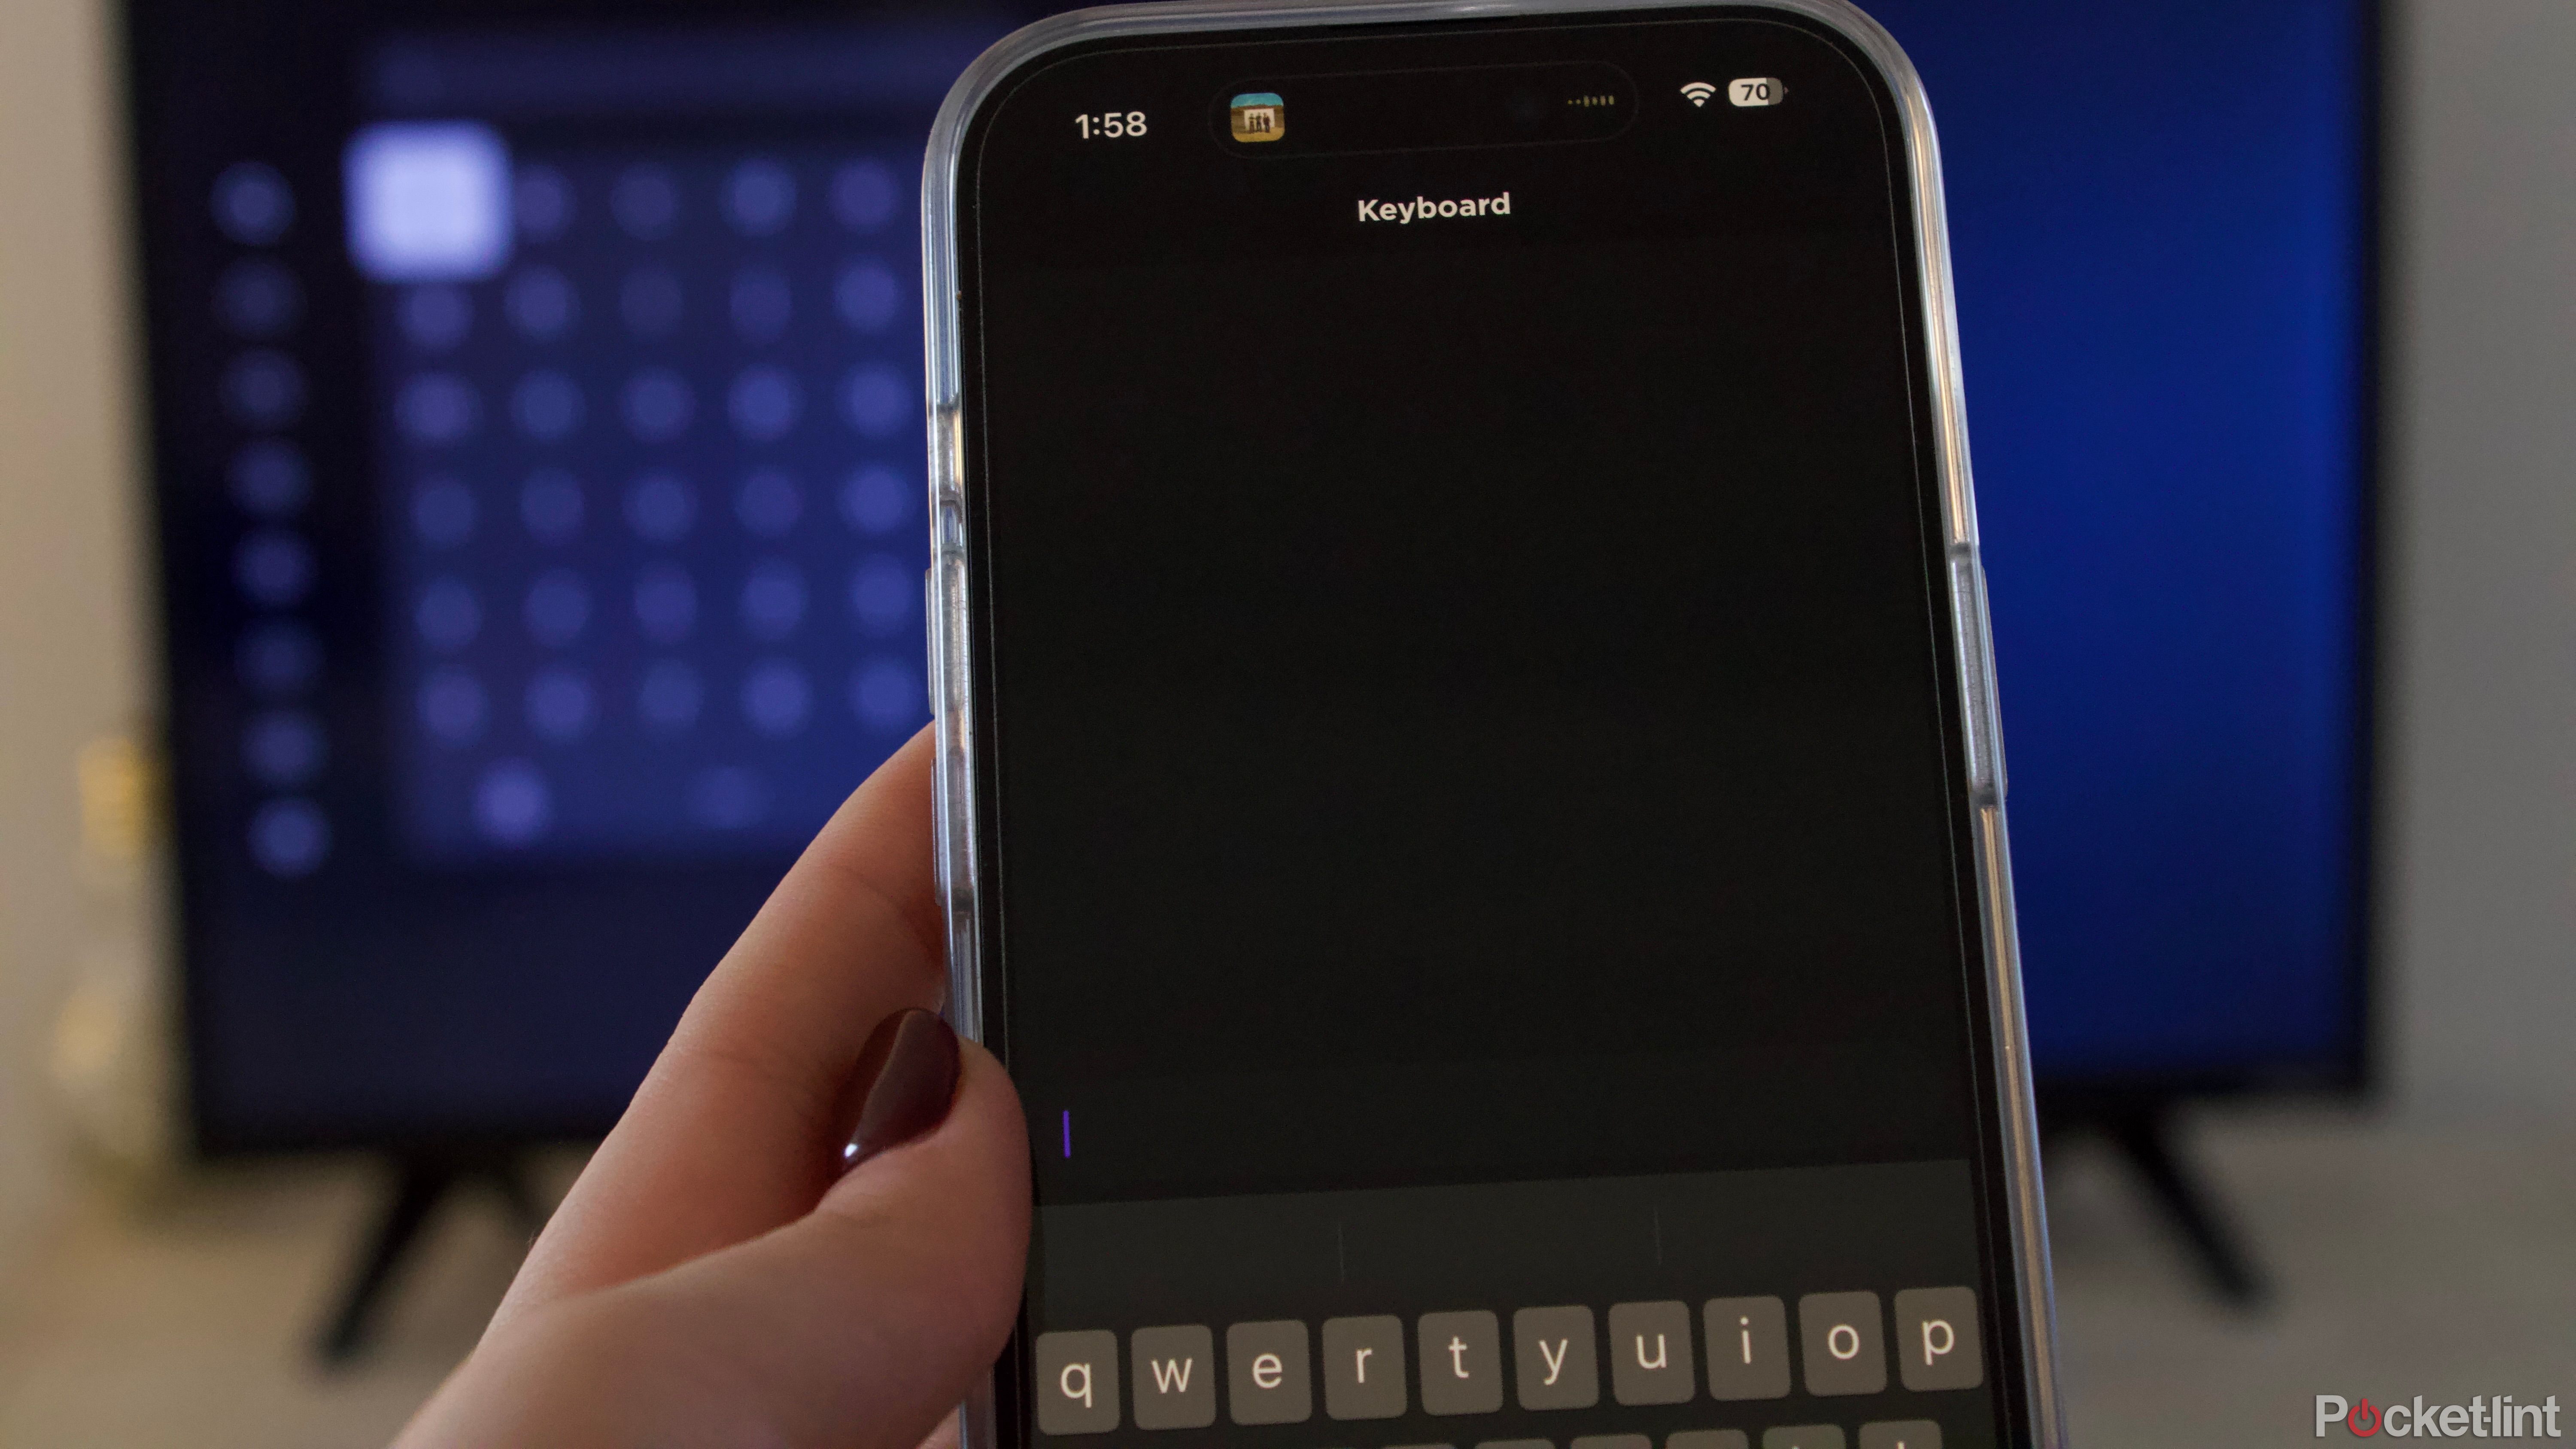 Keyboard on Roku TV app iPhone